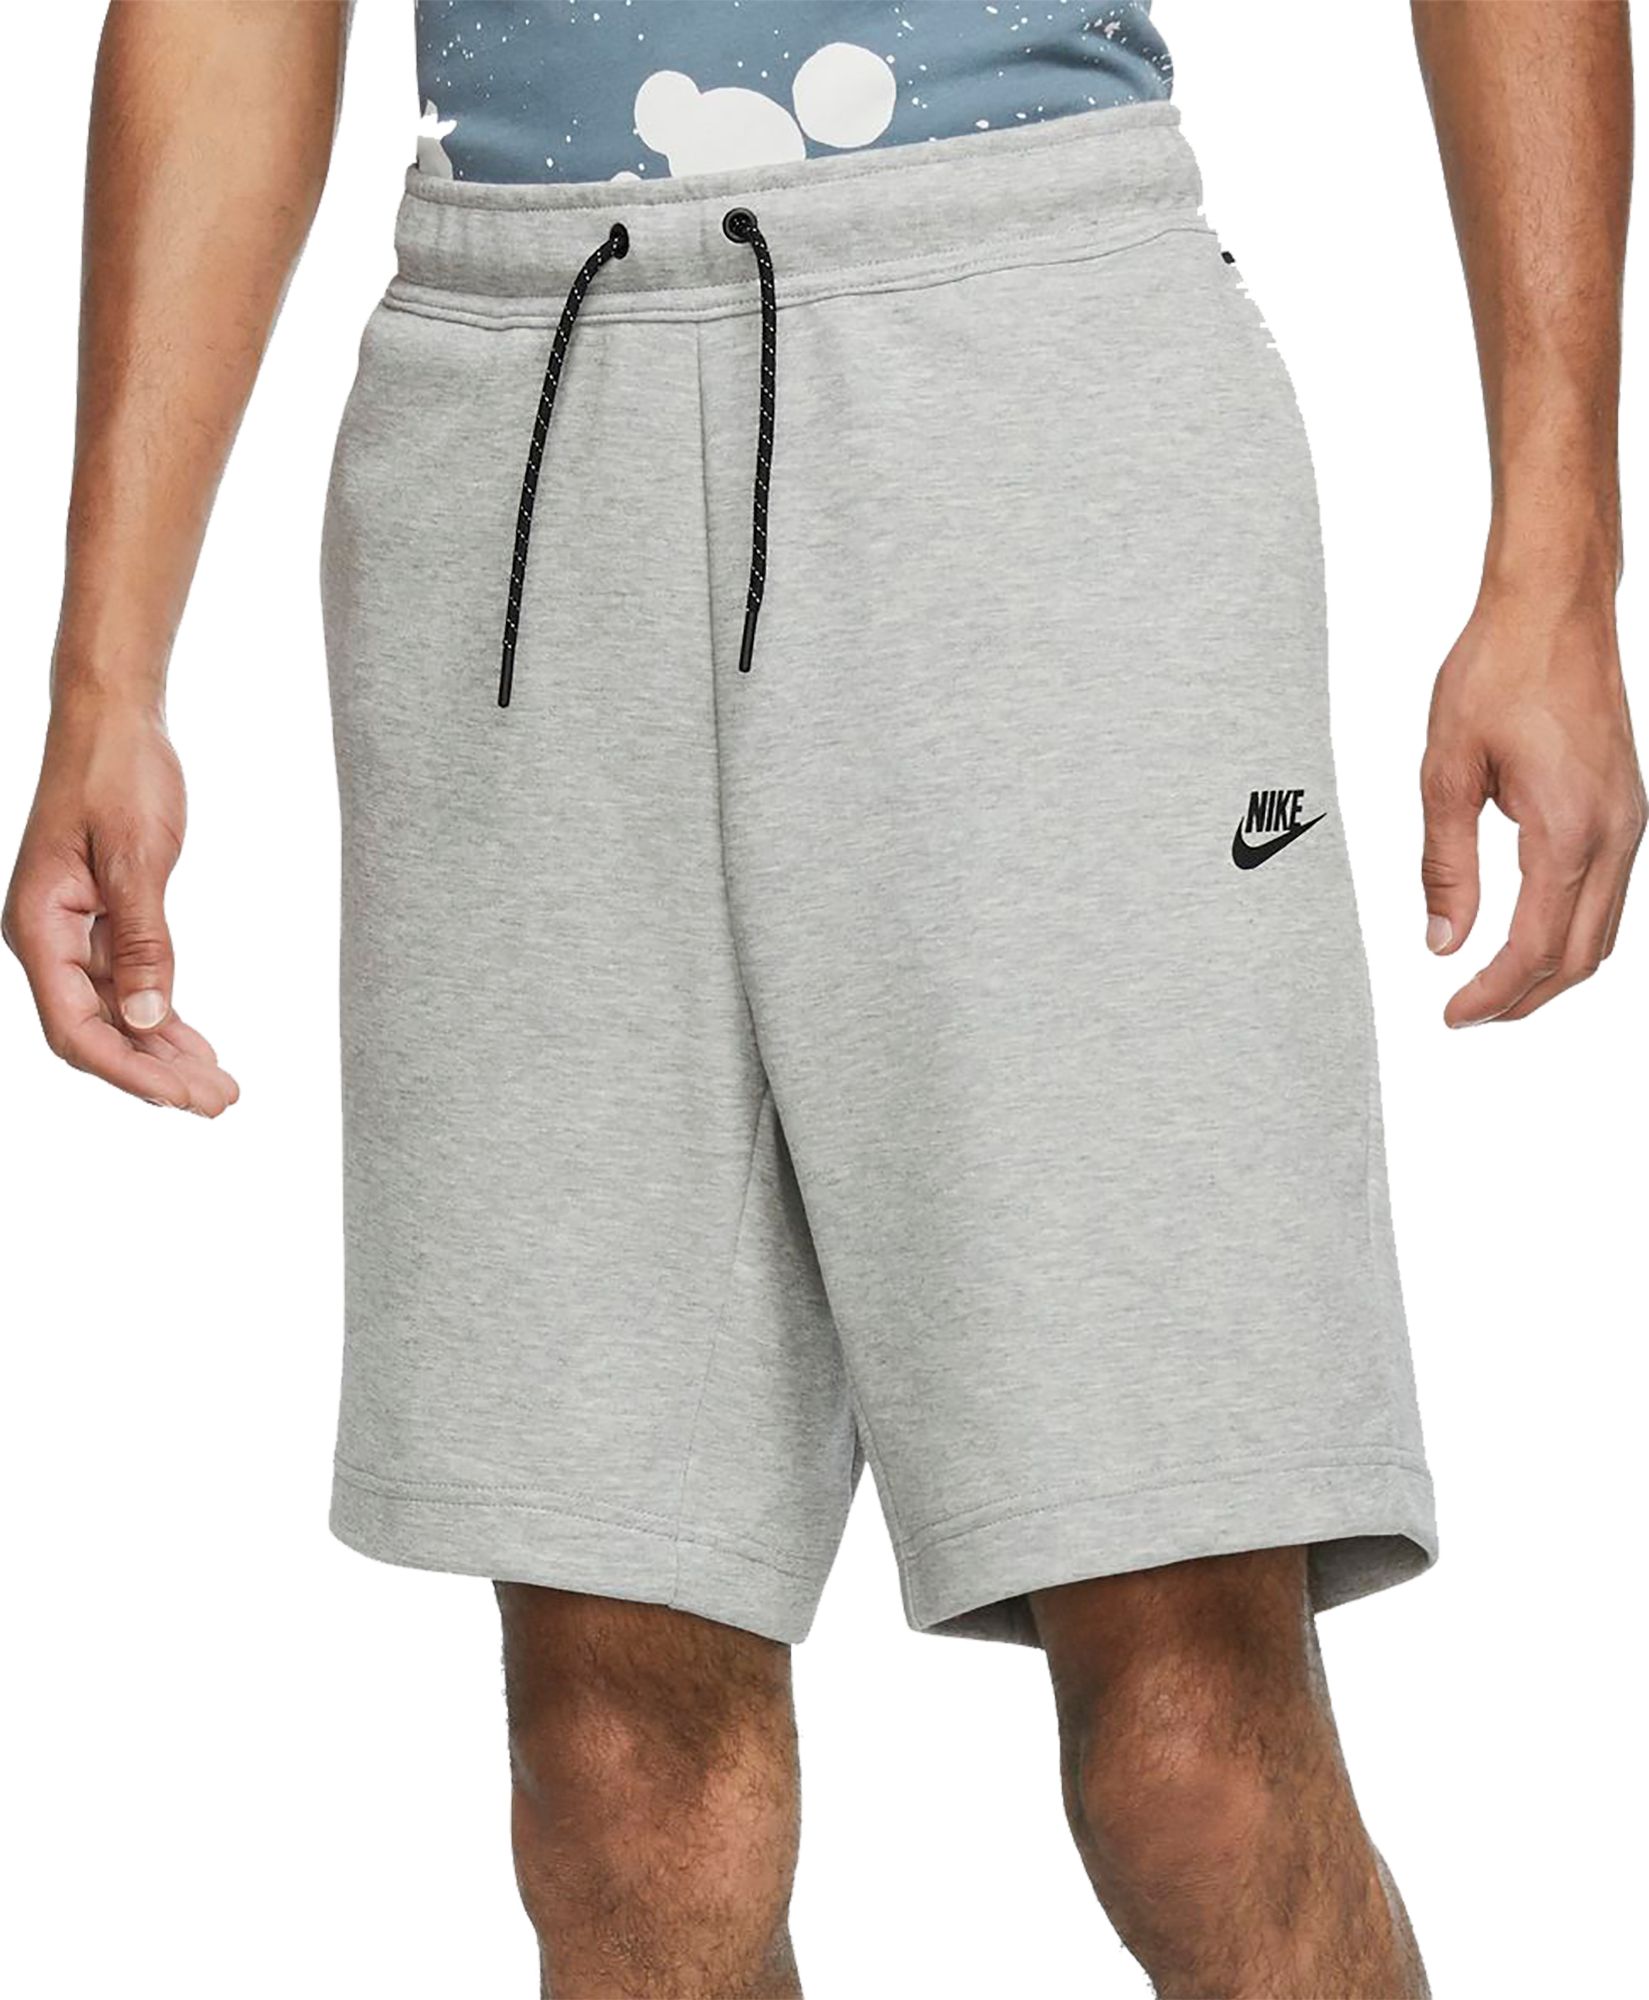 nike gray shorts mens